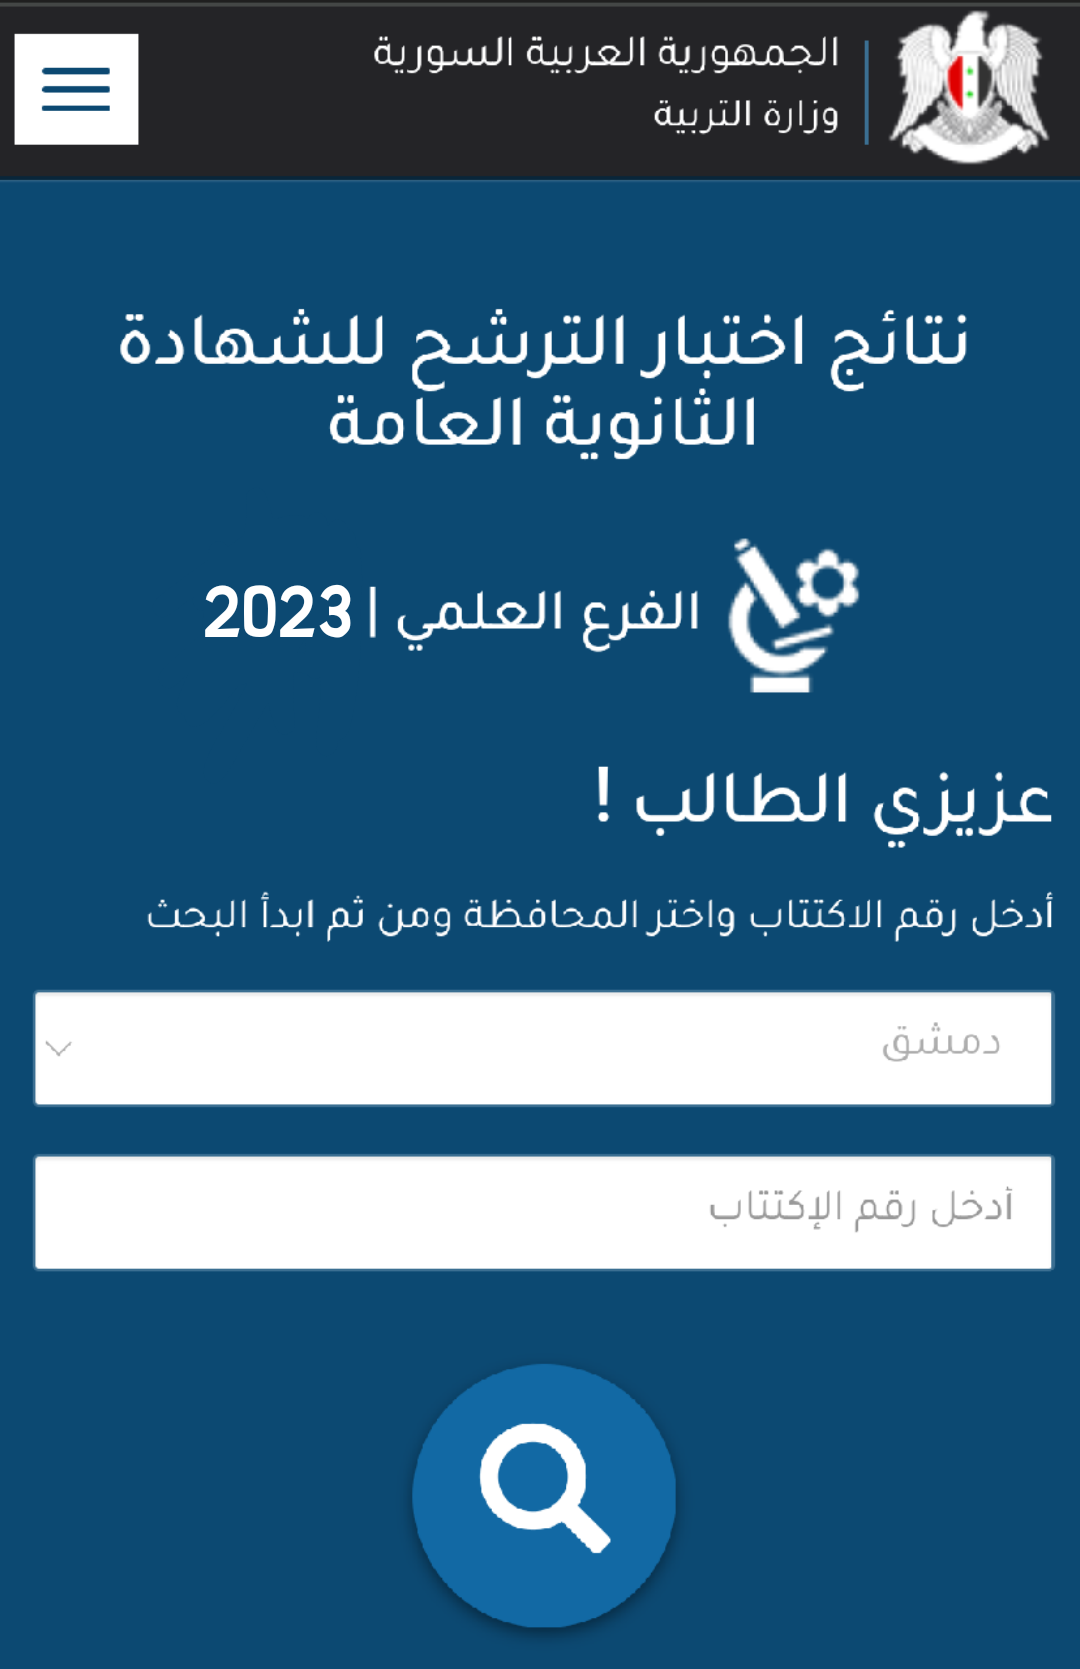 نتائج الامتحان الترشيحي في سورية حسب رقم الاكتتاب دورة 2023 علمي